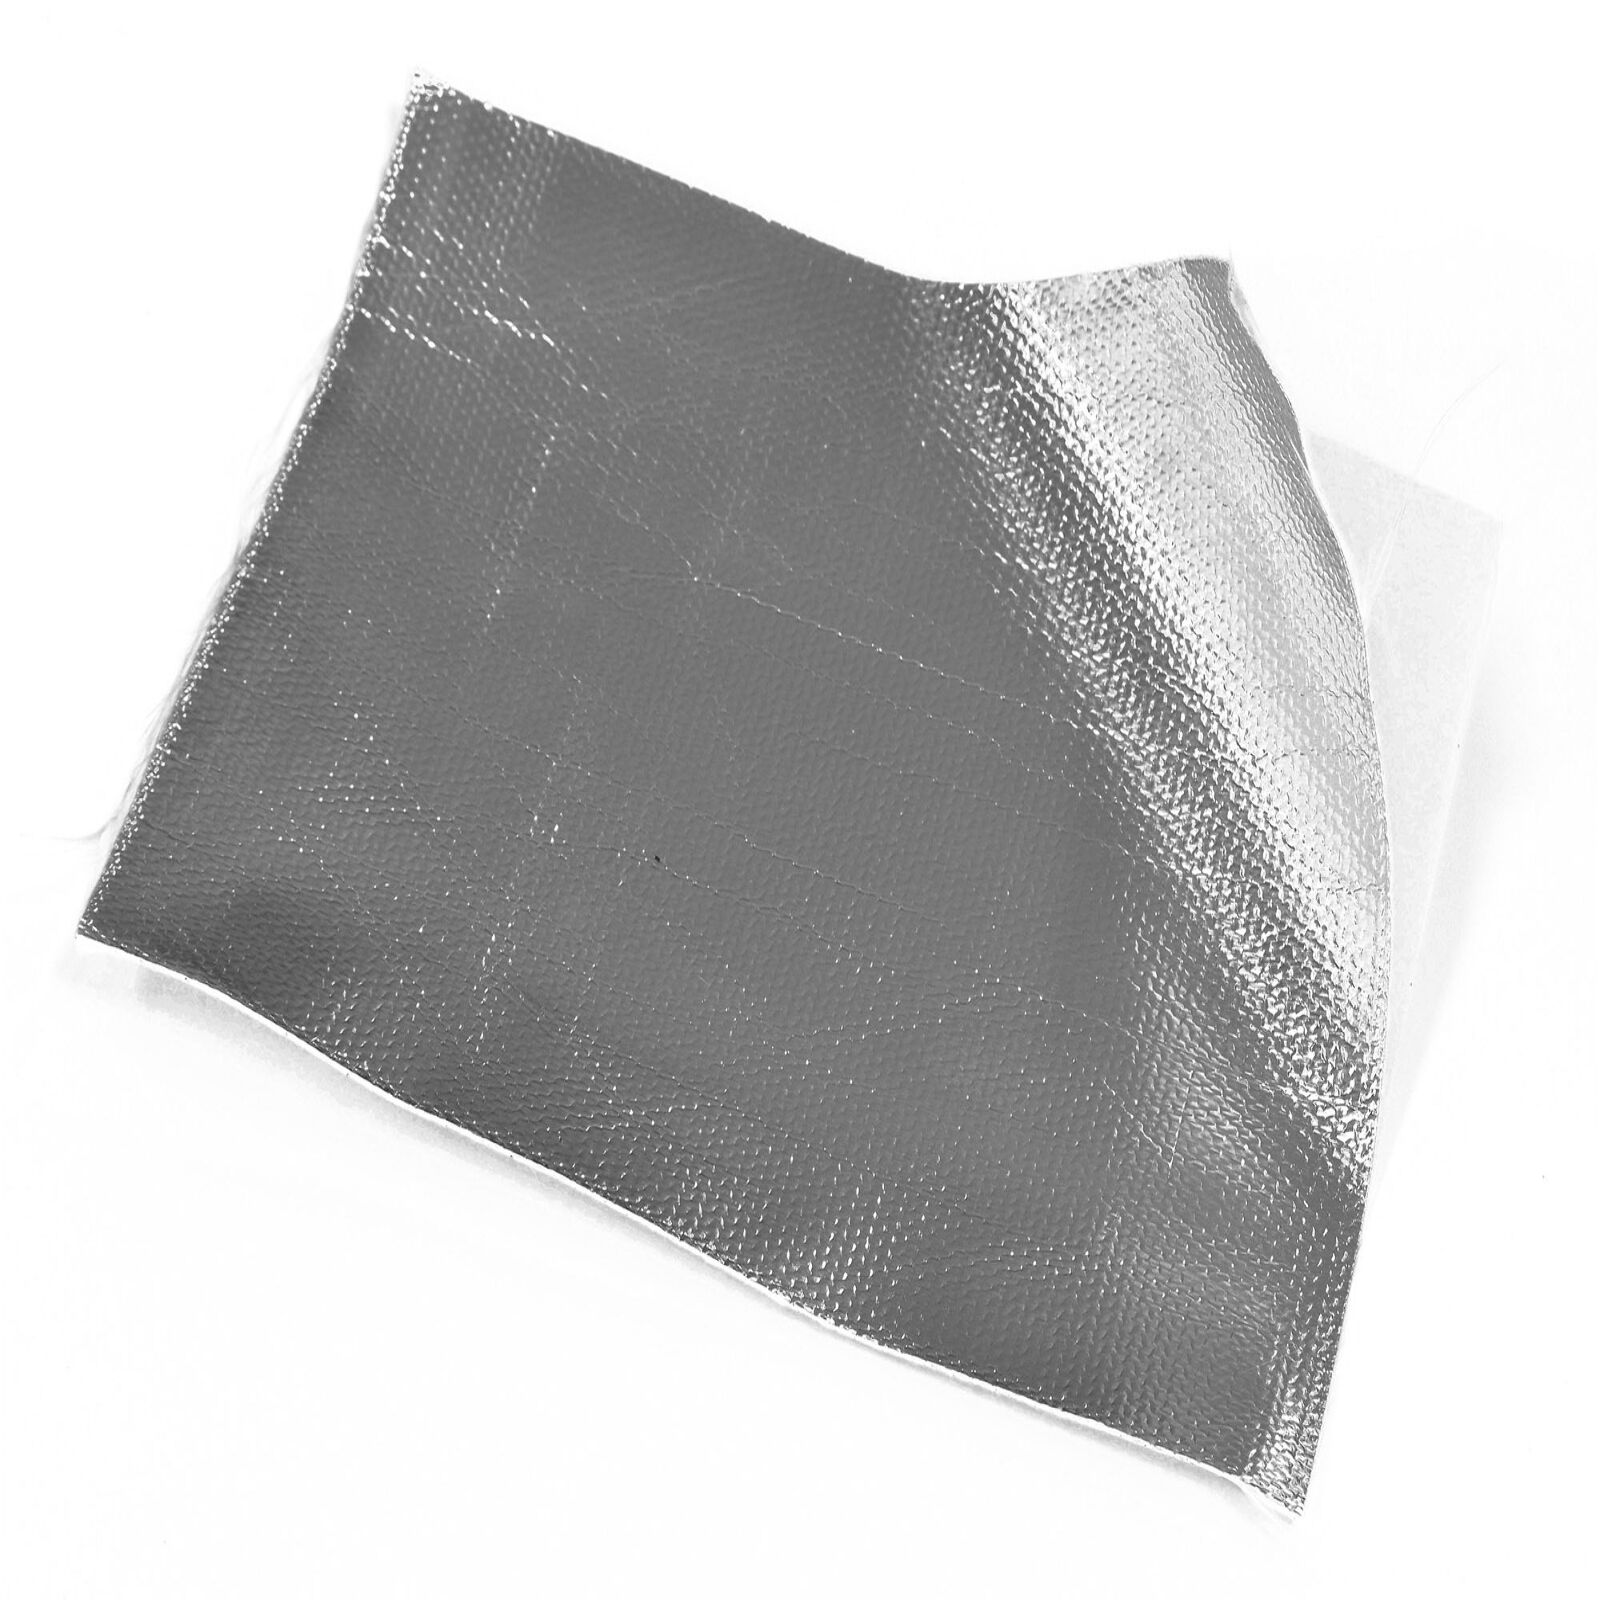 Obrázek produktu termoizolační fólie, samolepící (0,8 mm, 300 x 450 mm) 43640